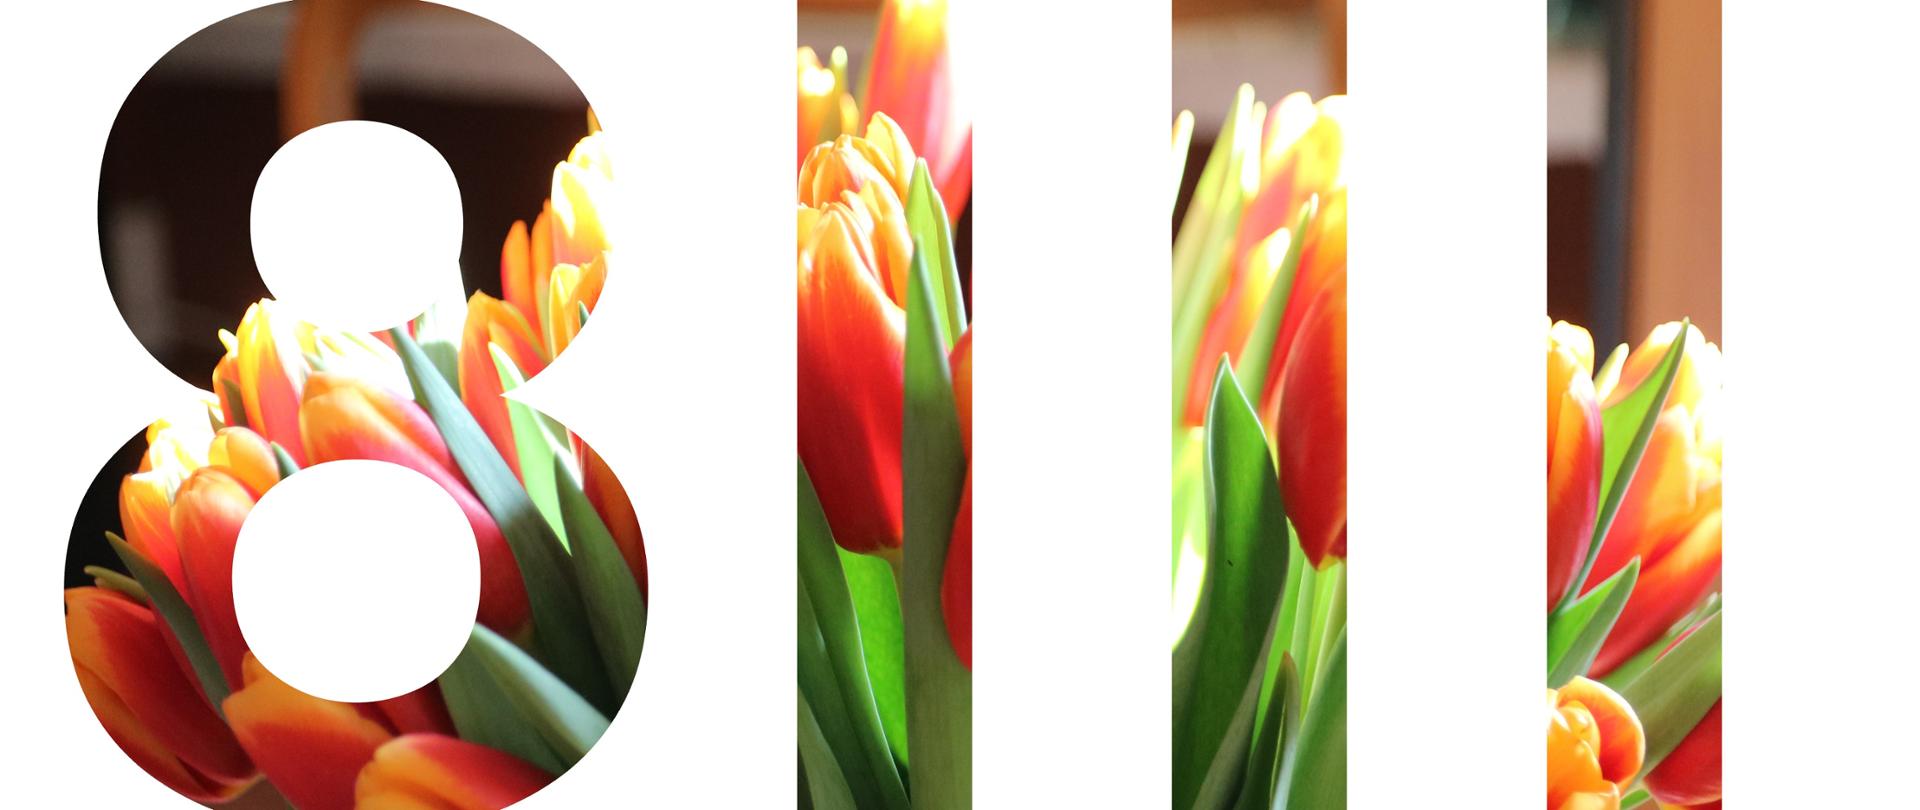 8 marca - data, tekst wypełniony zdjęciem tulipanów